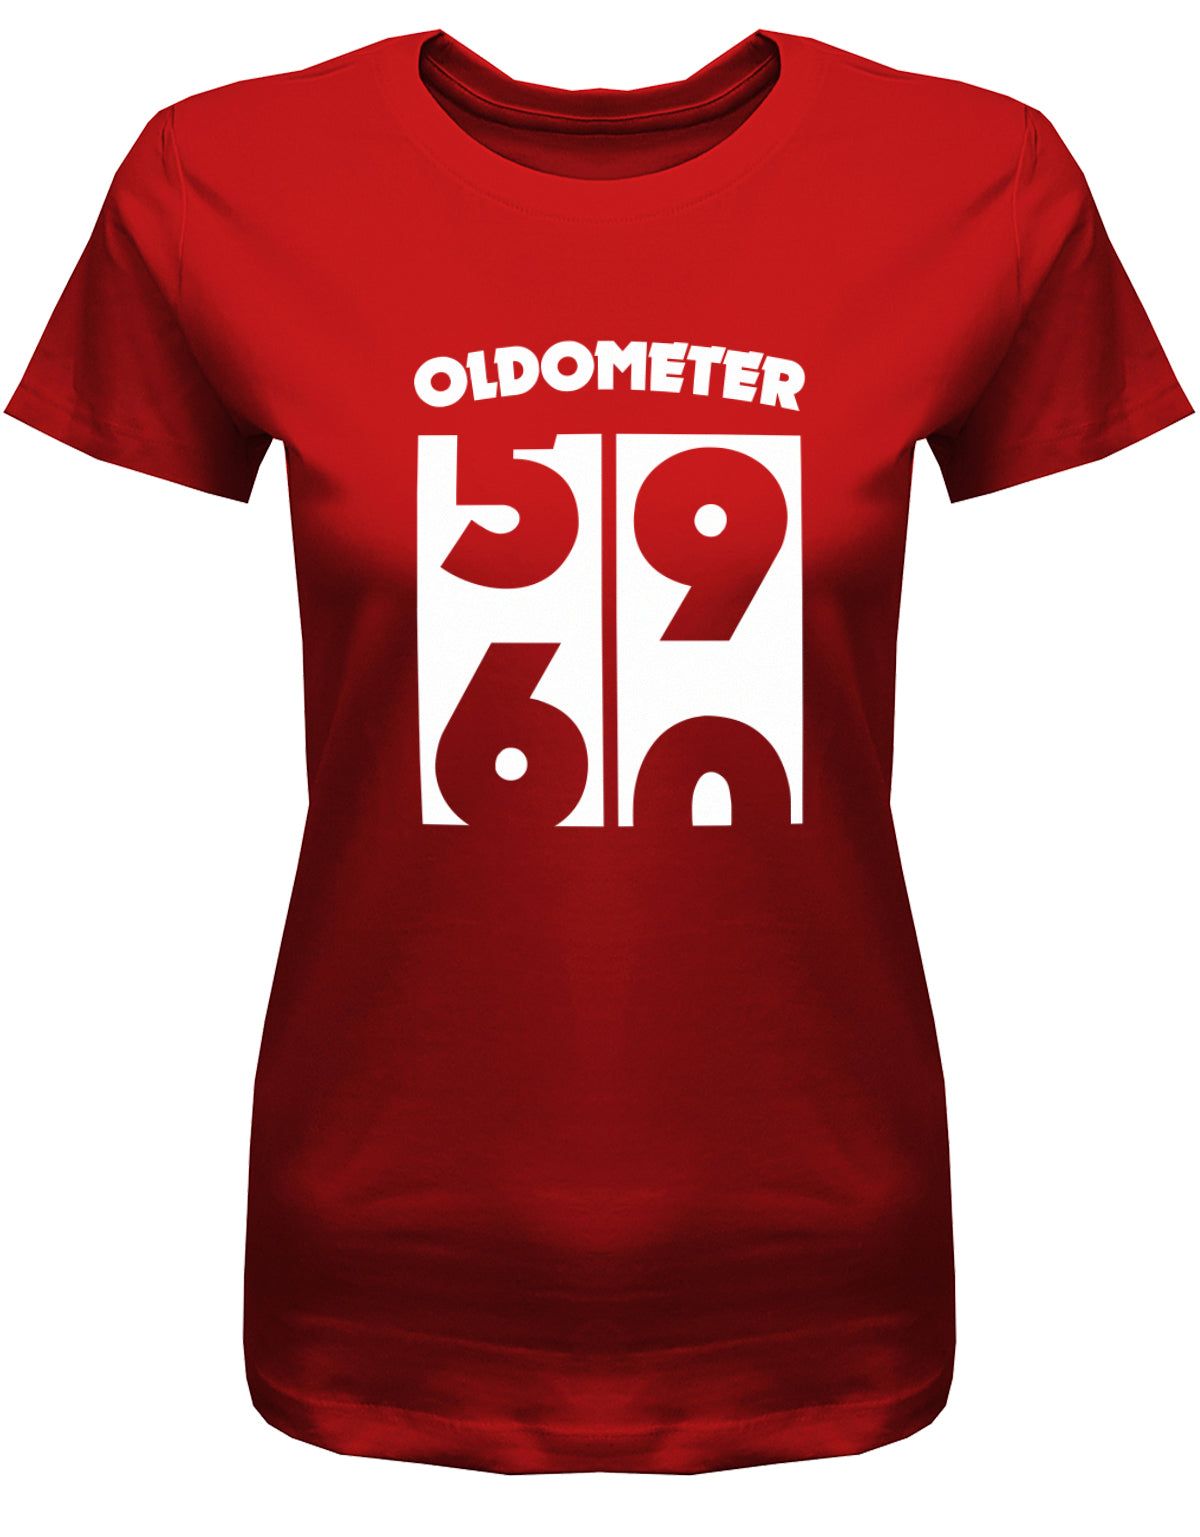 Lustiges T-Shirt zum 60 Geburtstag für die Frau Bedruckt mit Oldometer Wechsel von 59 zu 60 Jahren. Rot